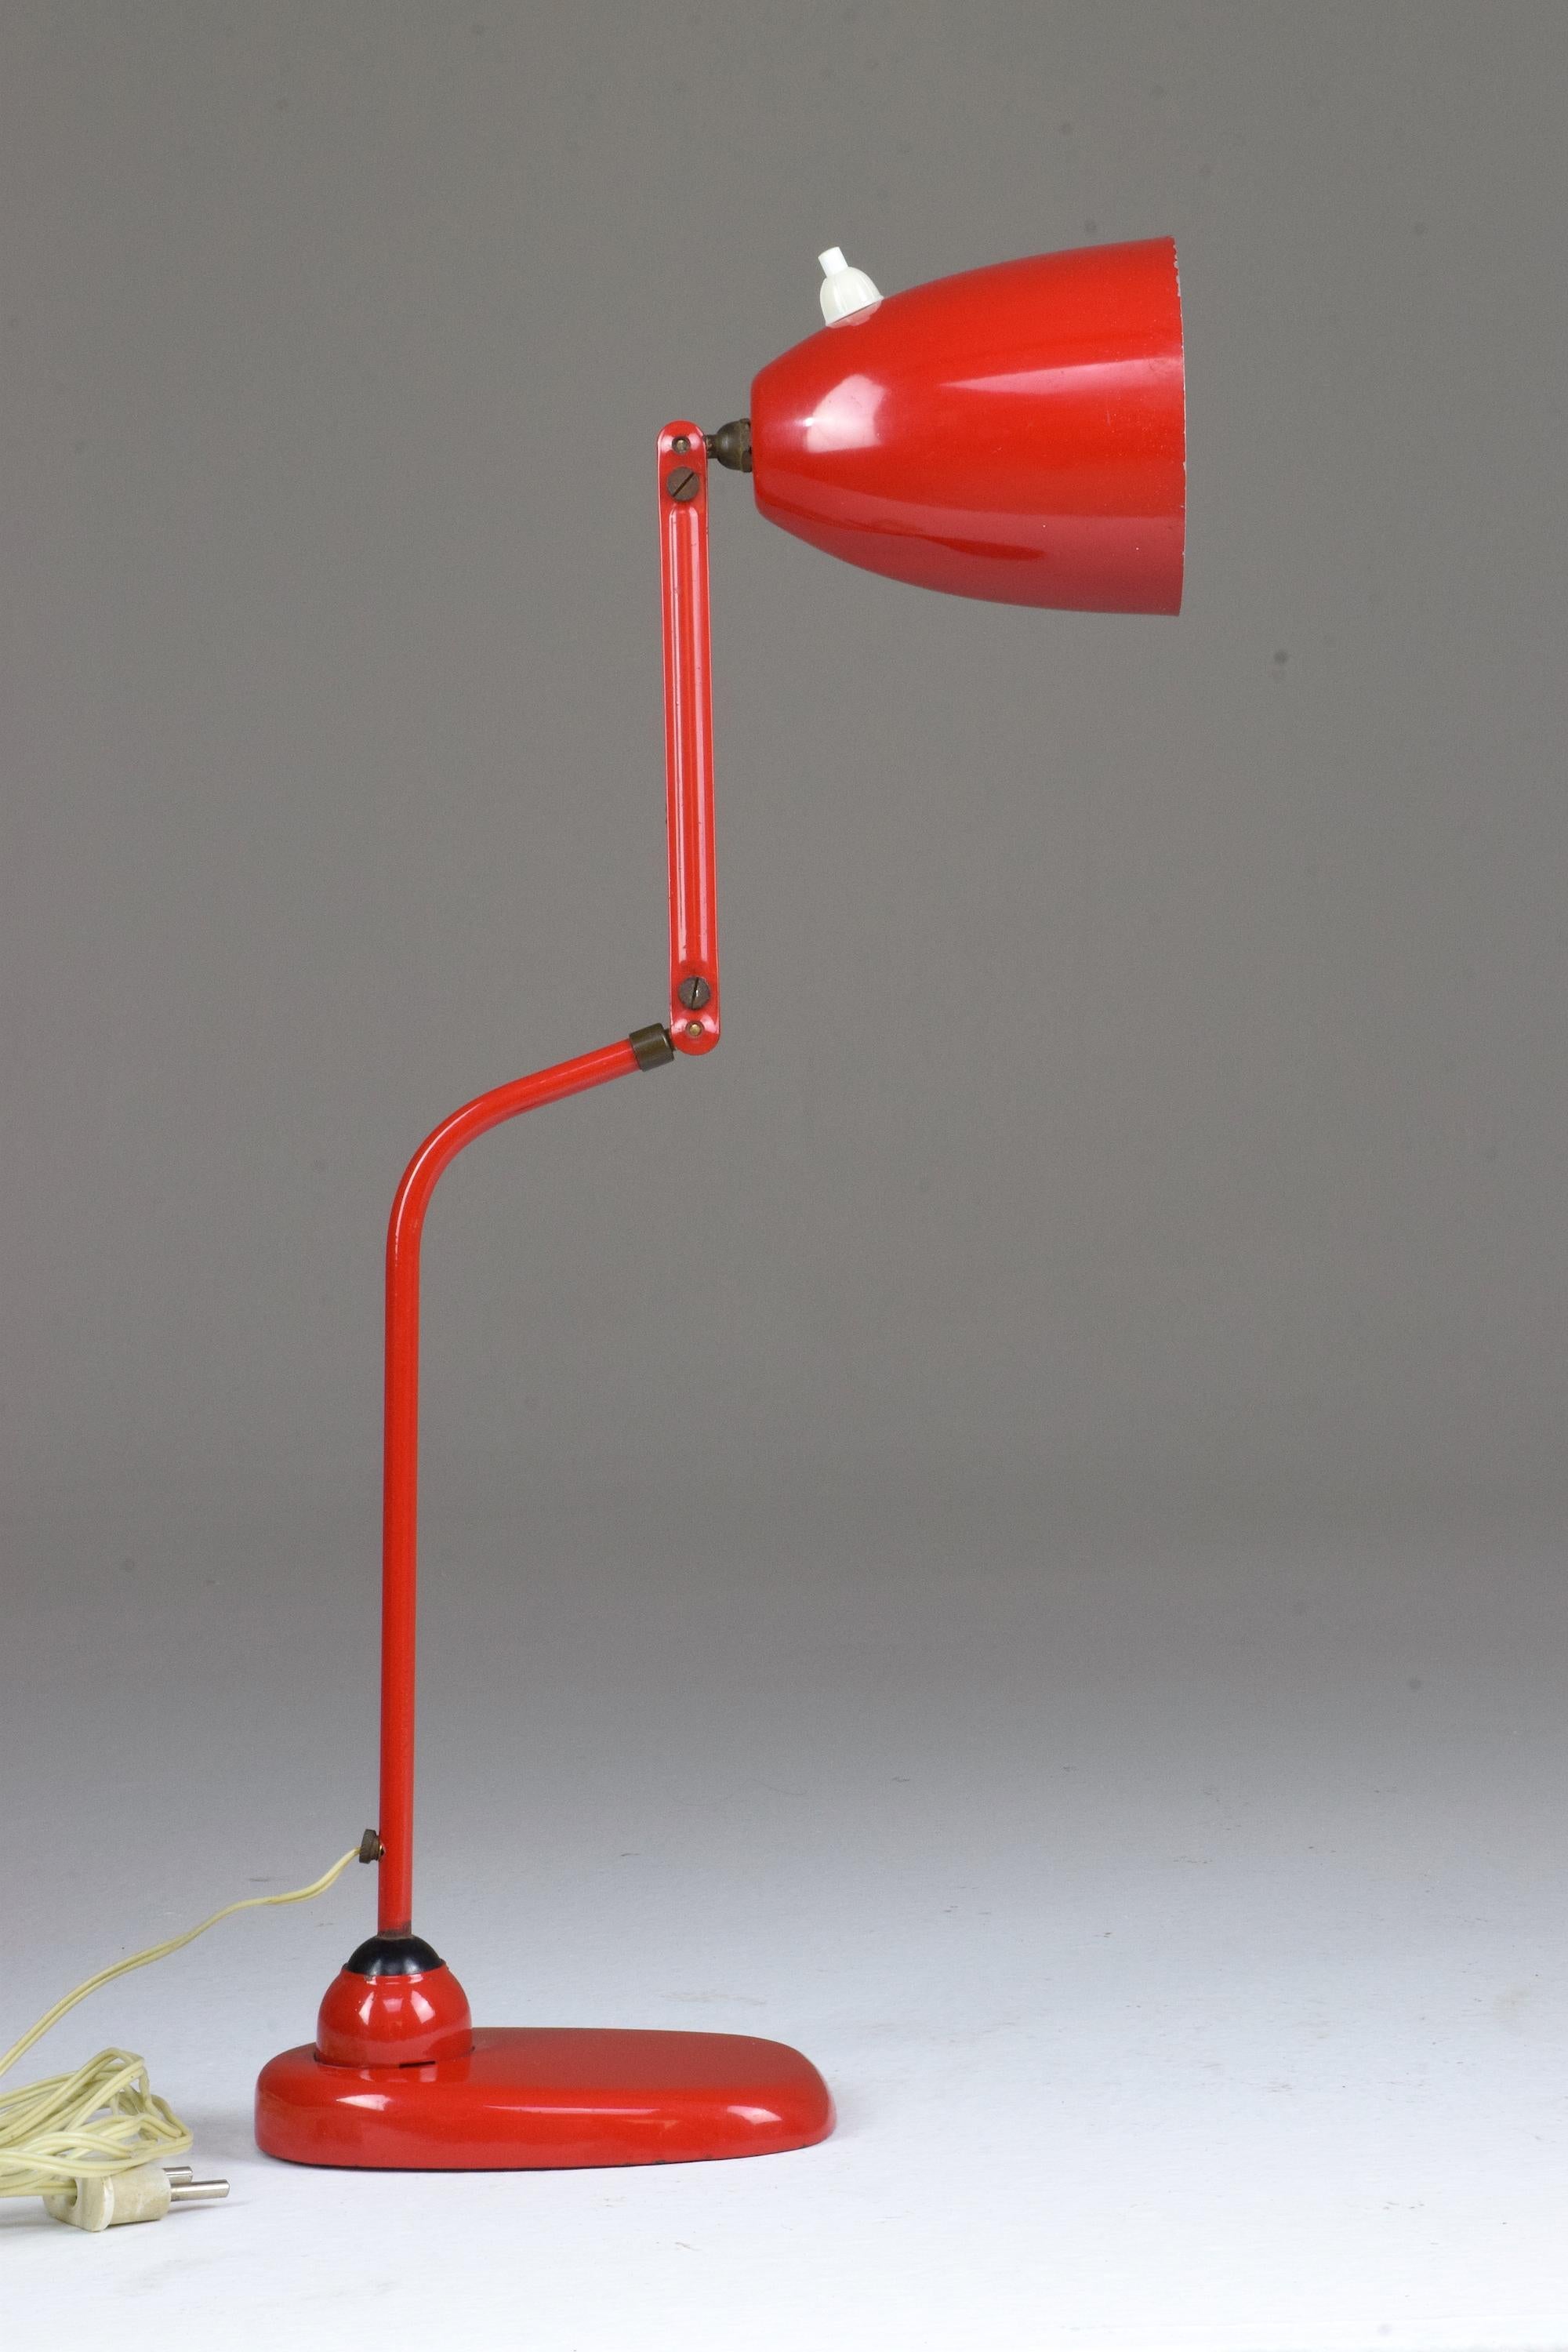 Une lampe de bureau italienne du 20ème siècle dans le style de Stilnovo qui s'articule à mi-bras. Cette pièce est conçue avec un interrupteur à poussoir sur l'abat-jour en aluminium, une structure en acier et des joints en laiton.
Italie, vers les